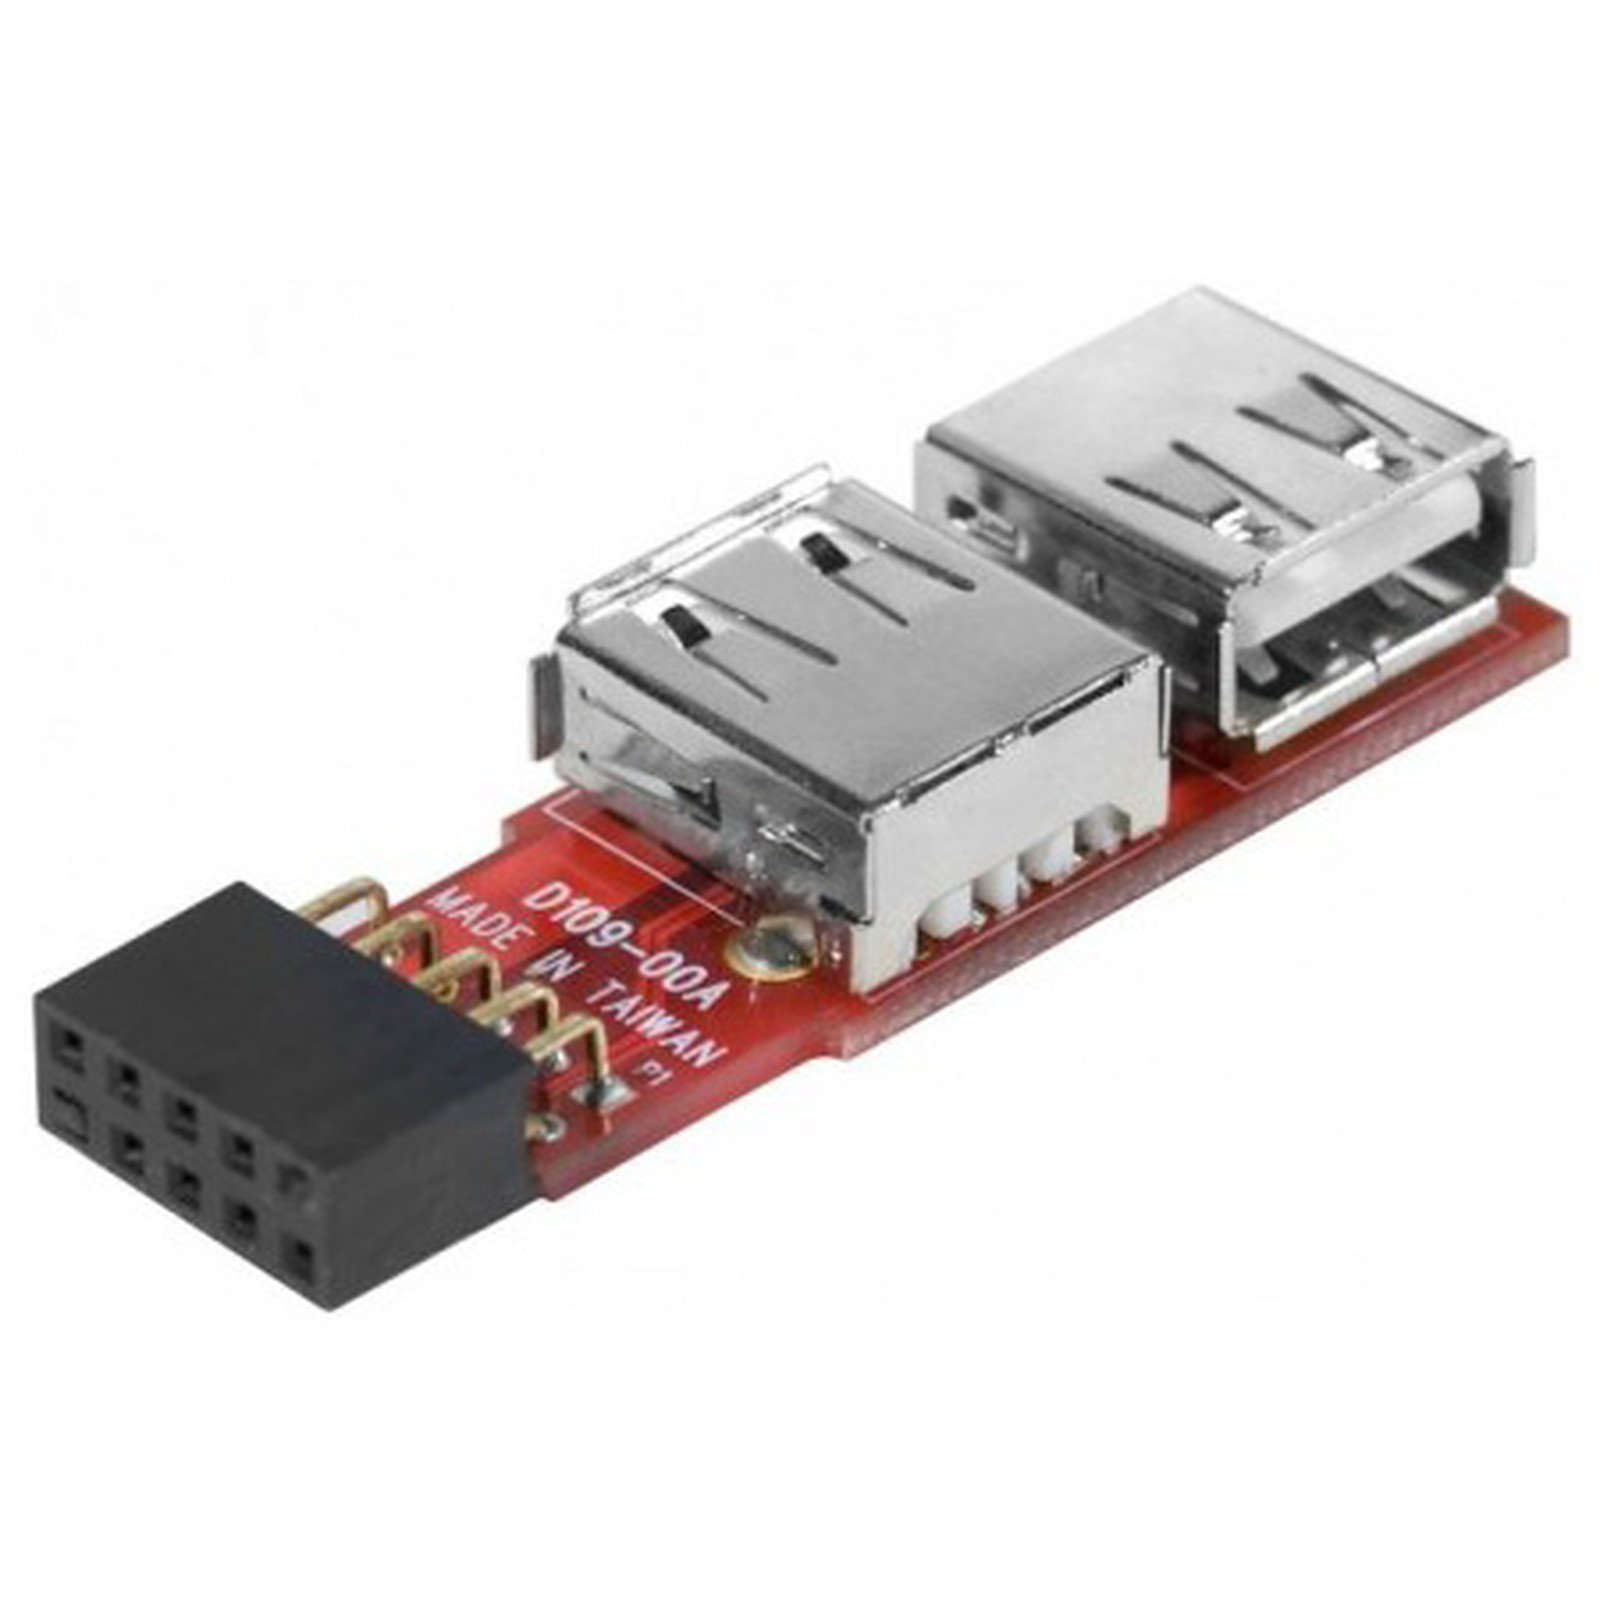 Adaptateur 2 ports USB 2.0 internes sur carte mère - USB Generique